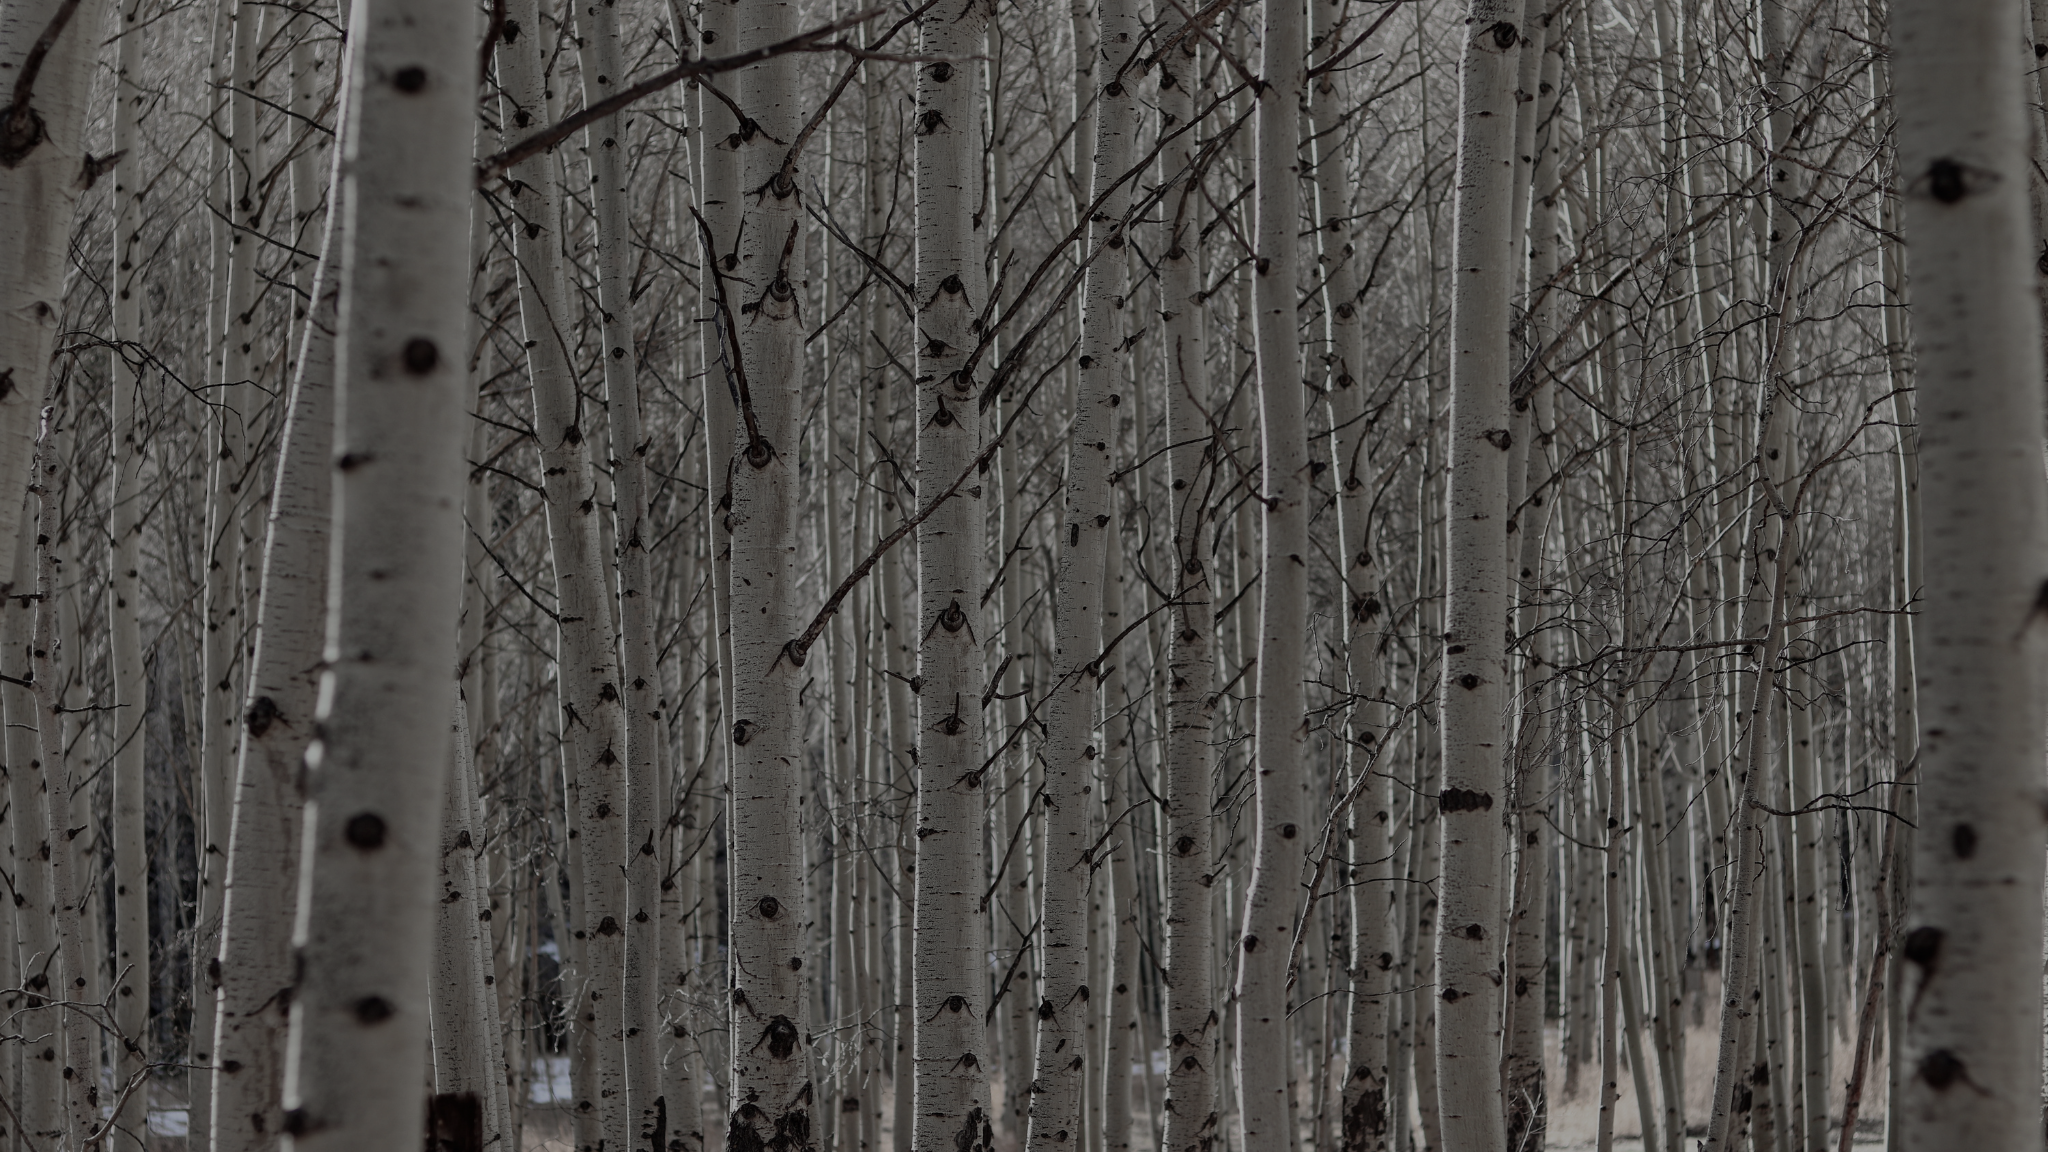 Grove of aspen trees